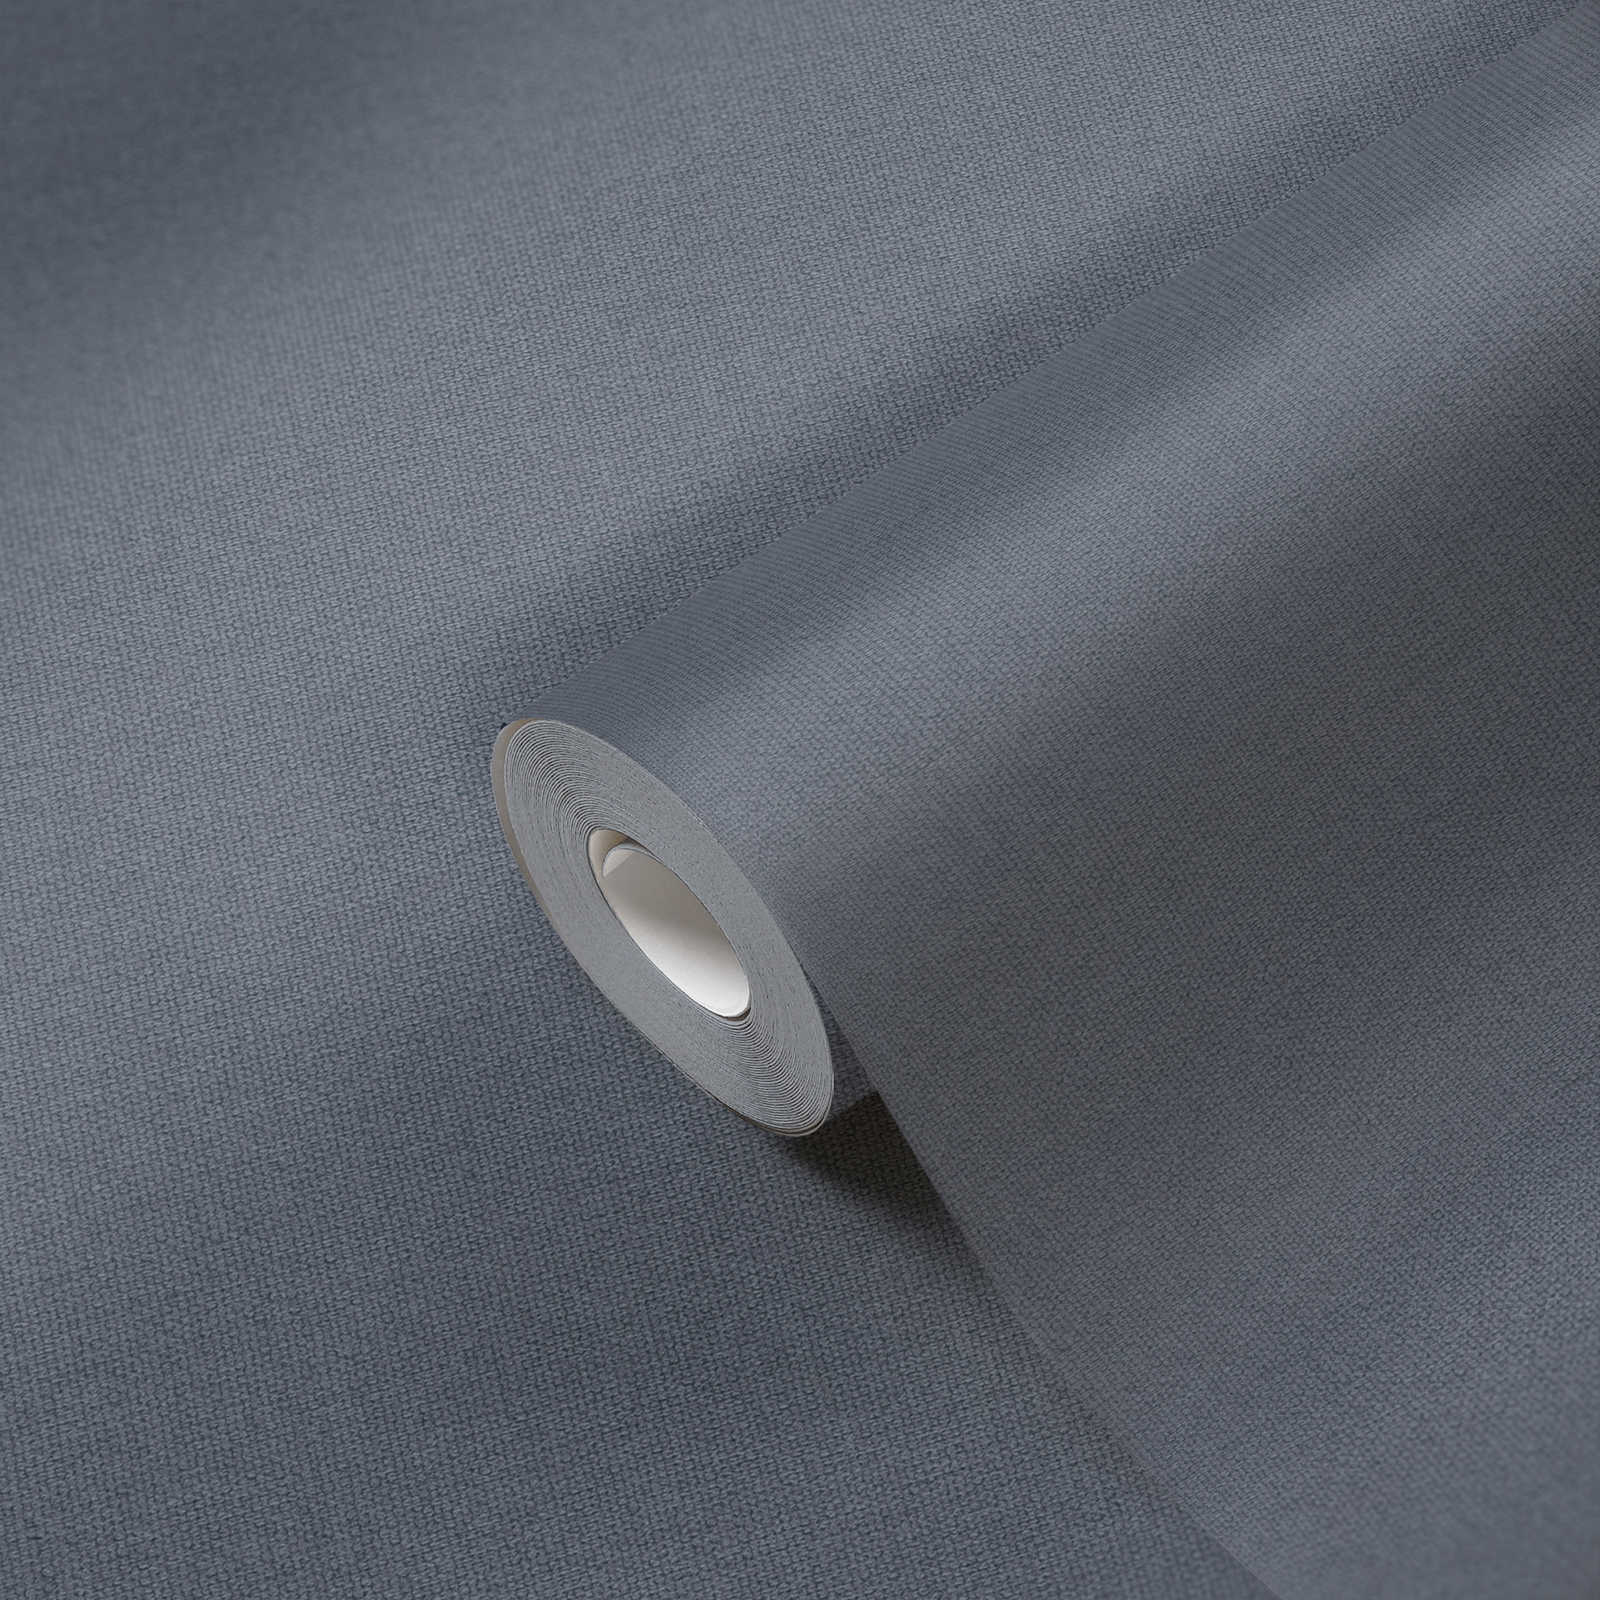             papier peint aspect lin avec surface structurée, uni - bleu
        